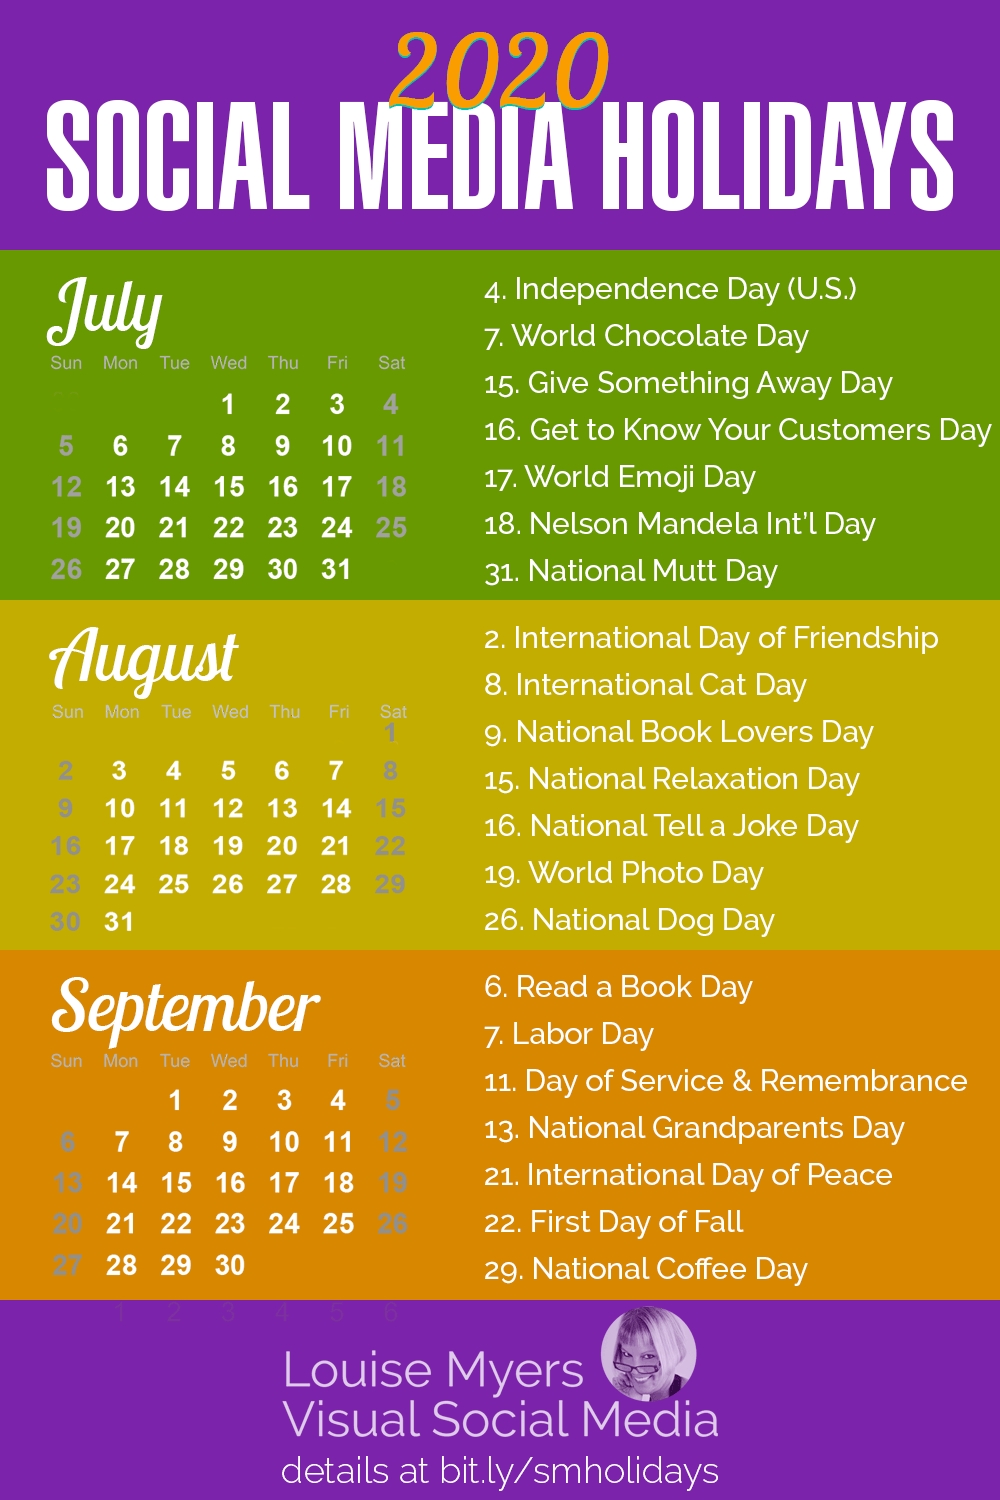 Printable List Of Holidays 2021 Example Calendar Printable